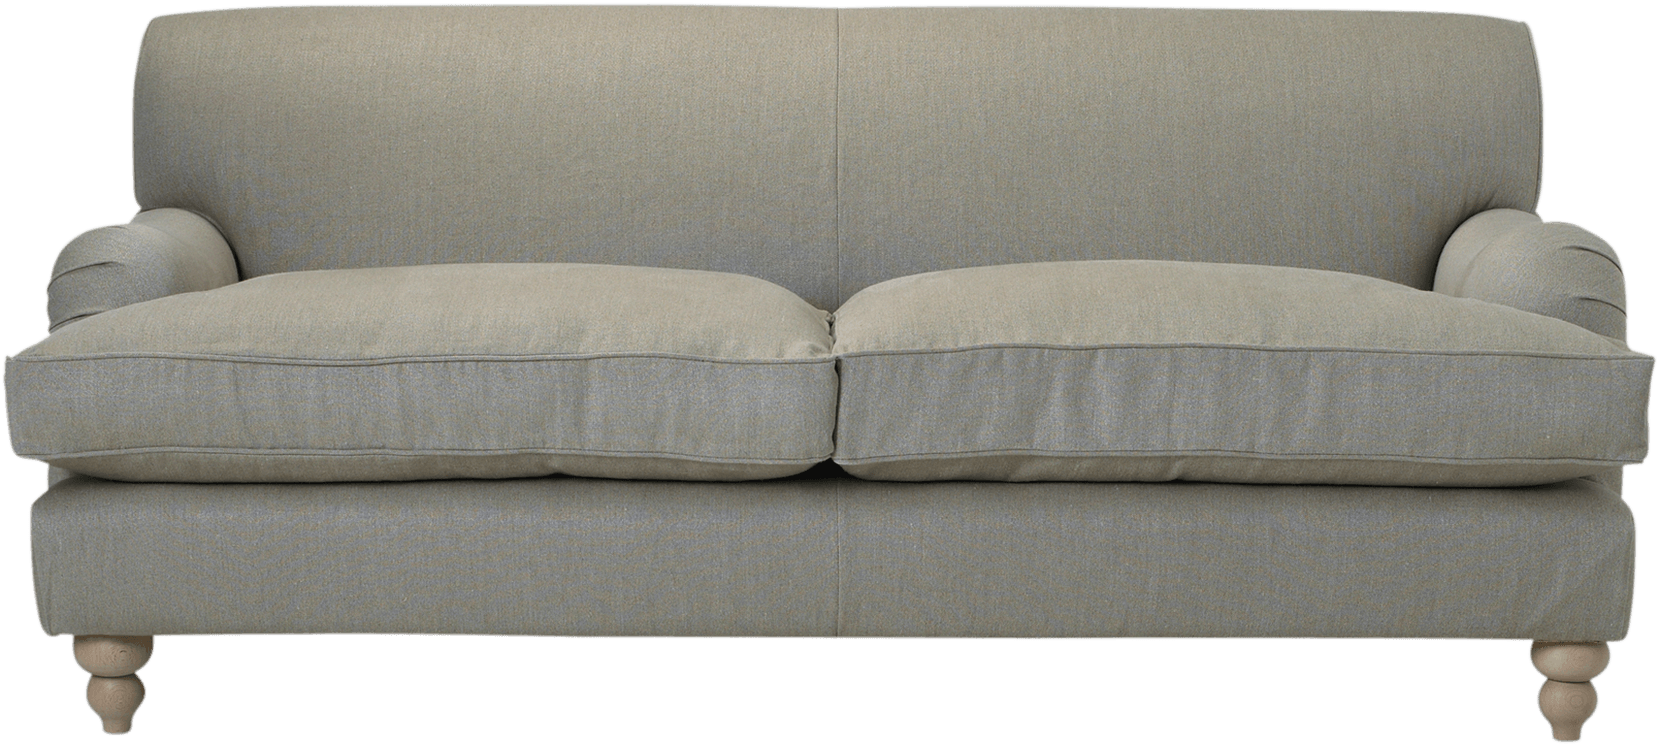 Elegant Gray Fabric Sofa